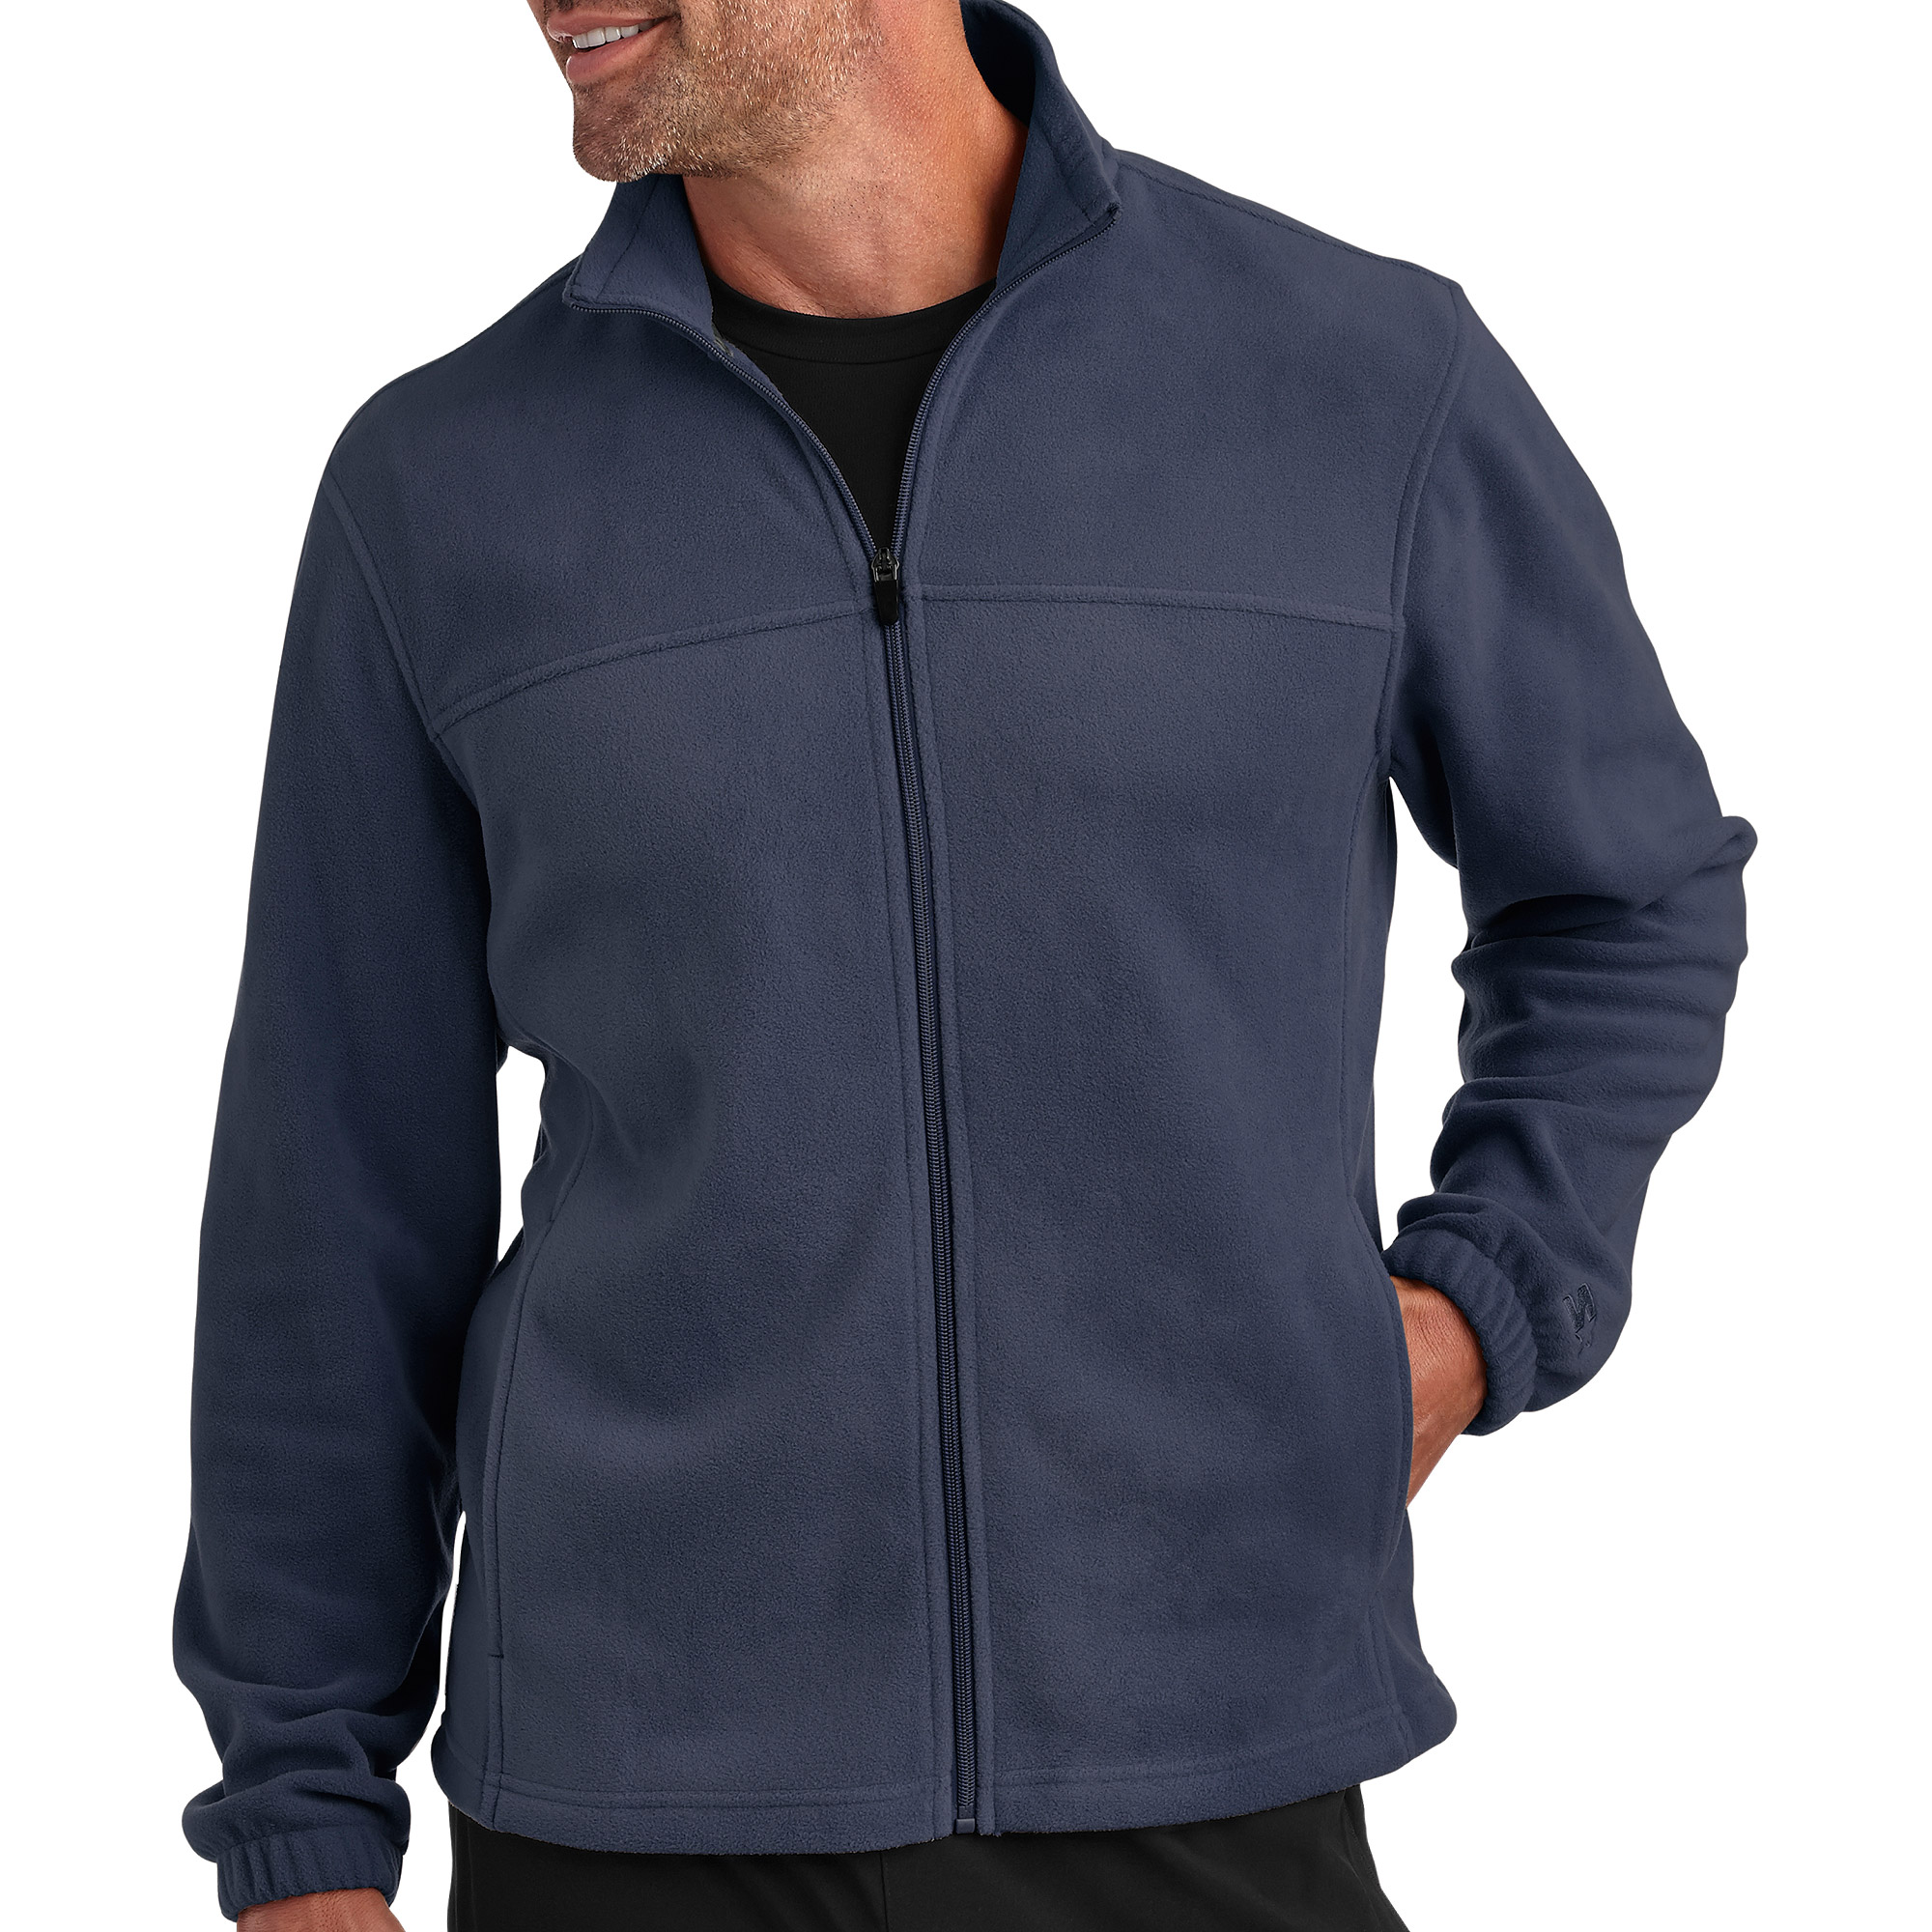 Men's Winter Full Zip Fleece Jacket - image 1 of 2